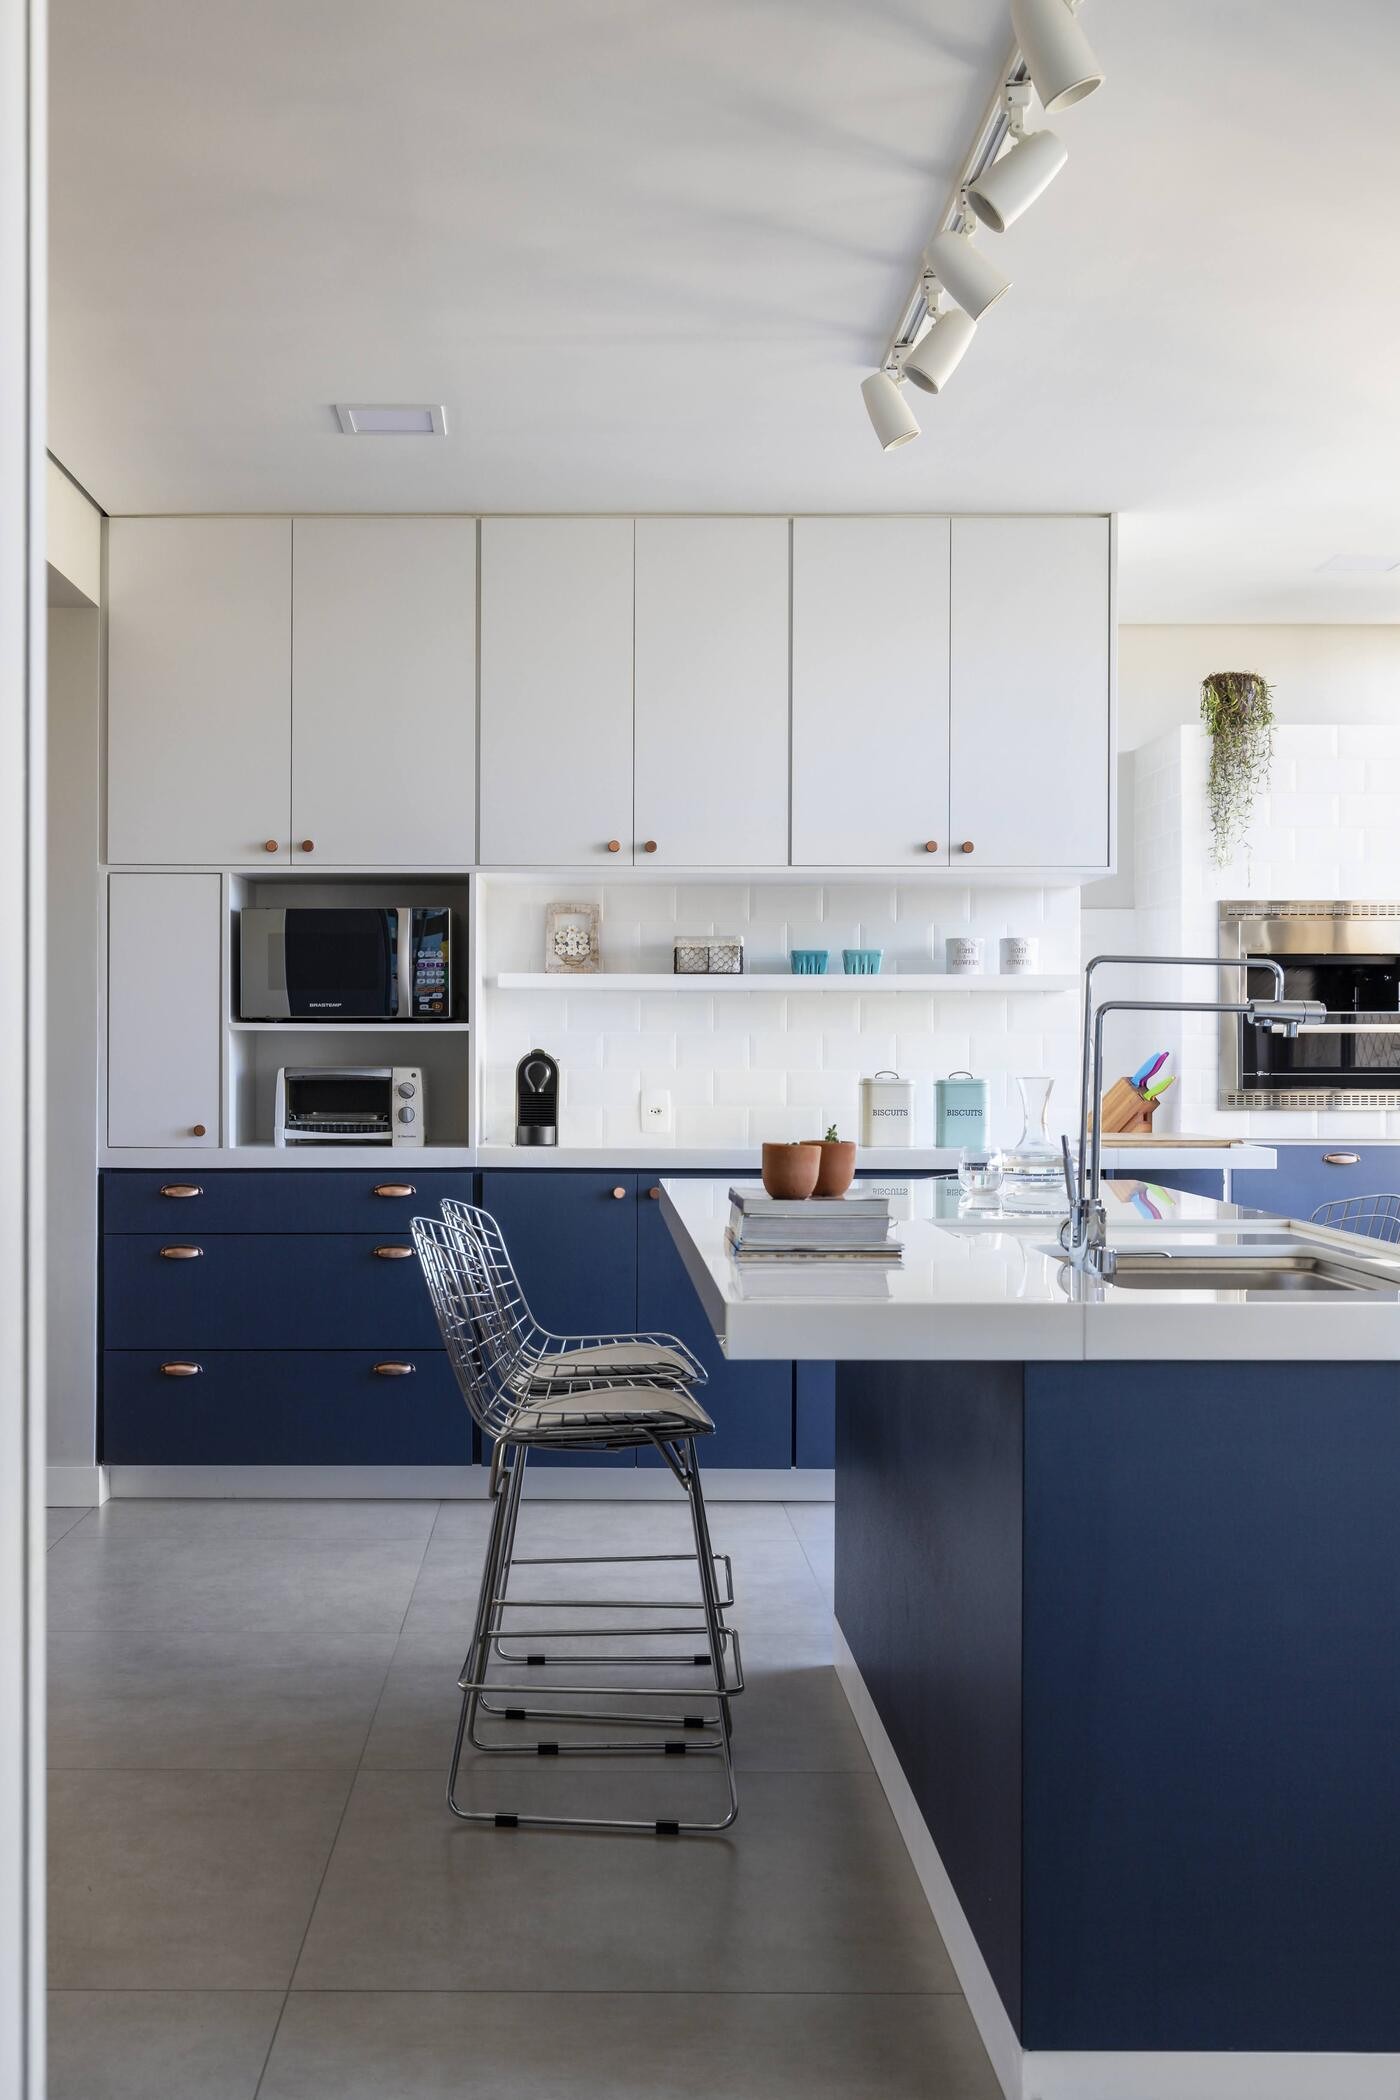 Décor do dia: azul e branco na cozinha com ilha (Foto: Ivan Araújo)